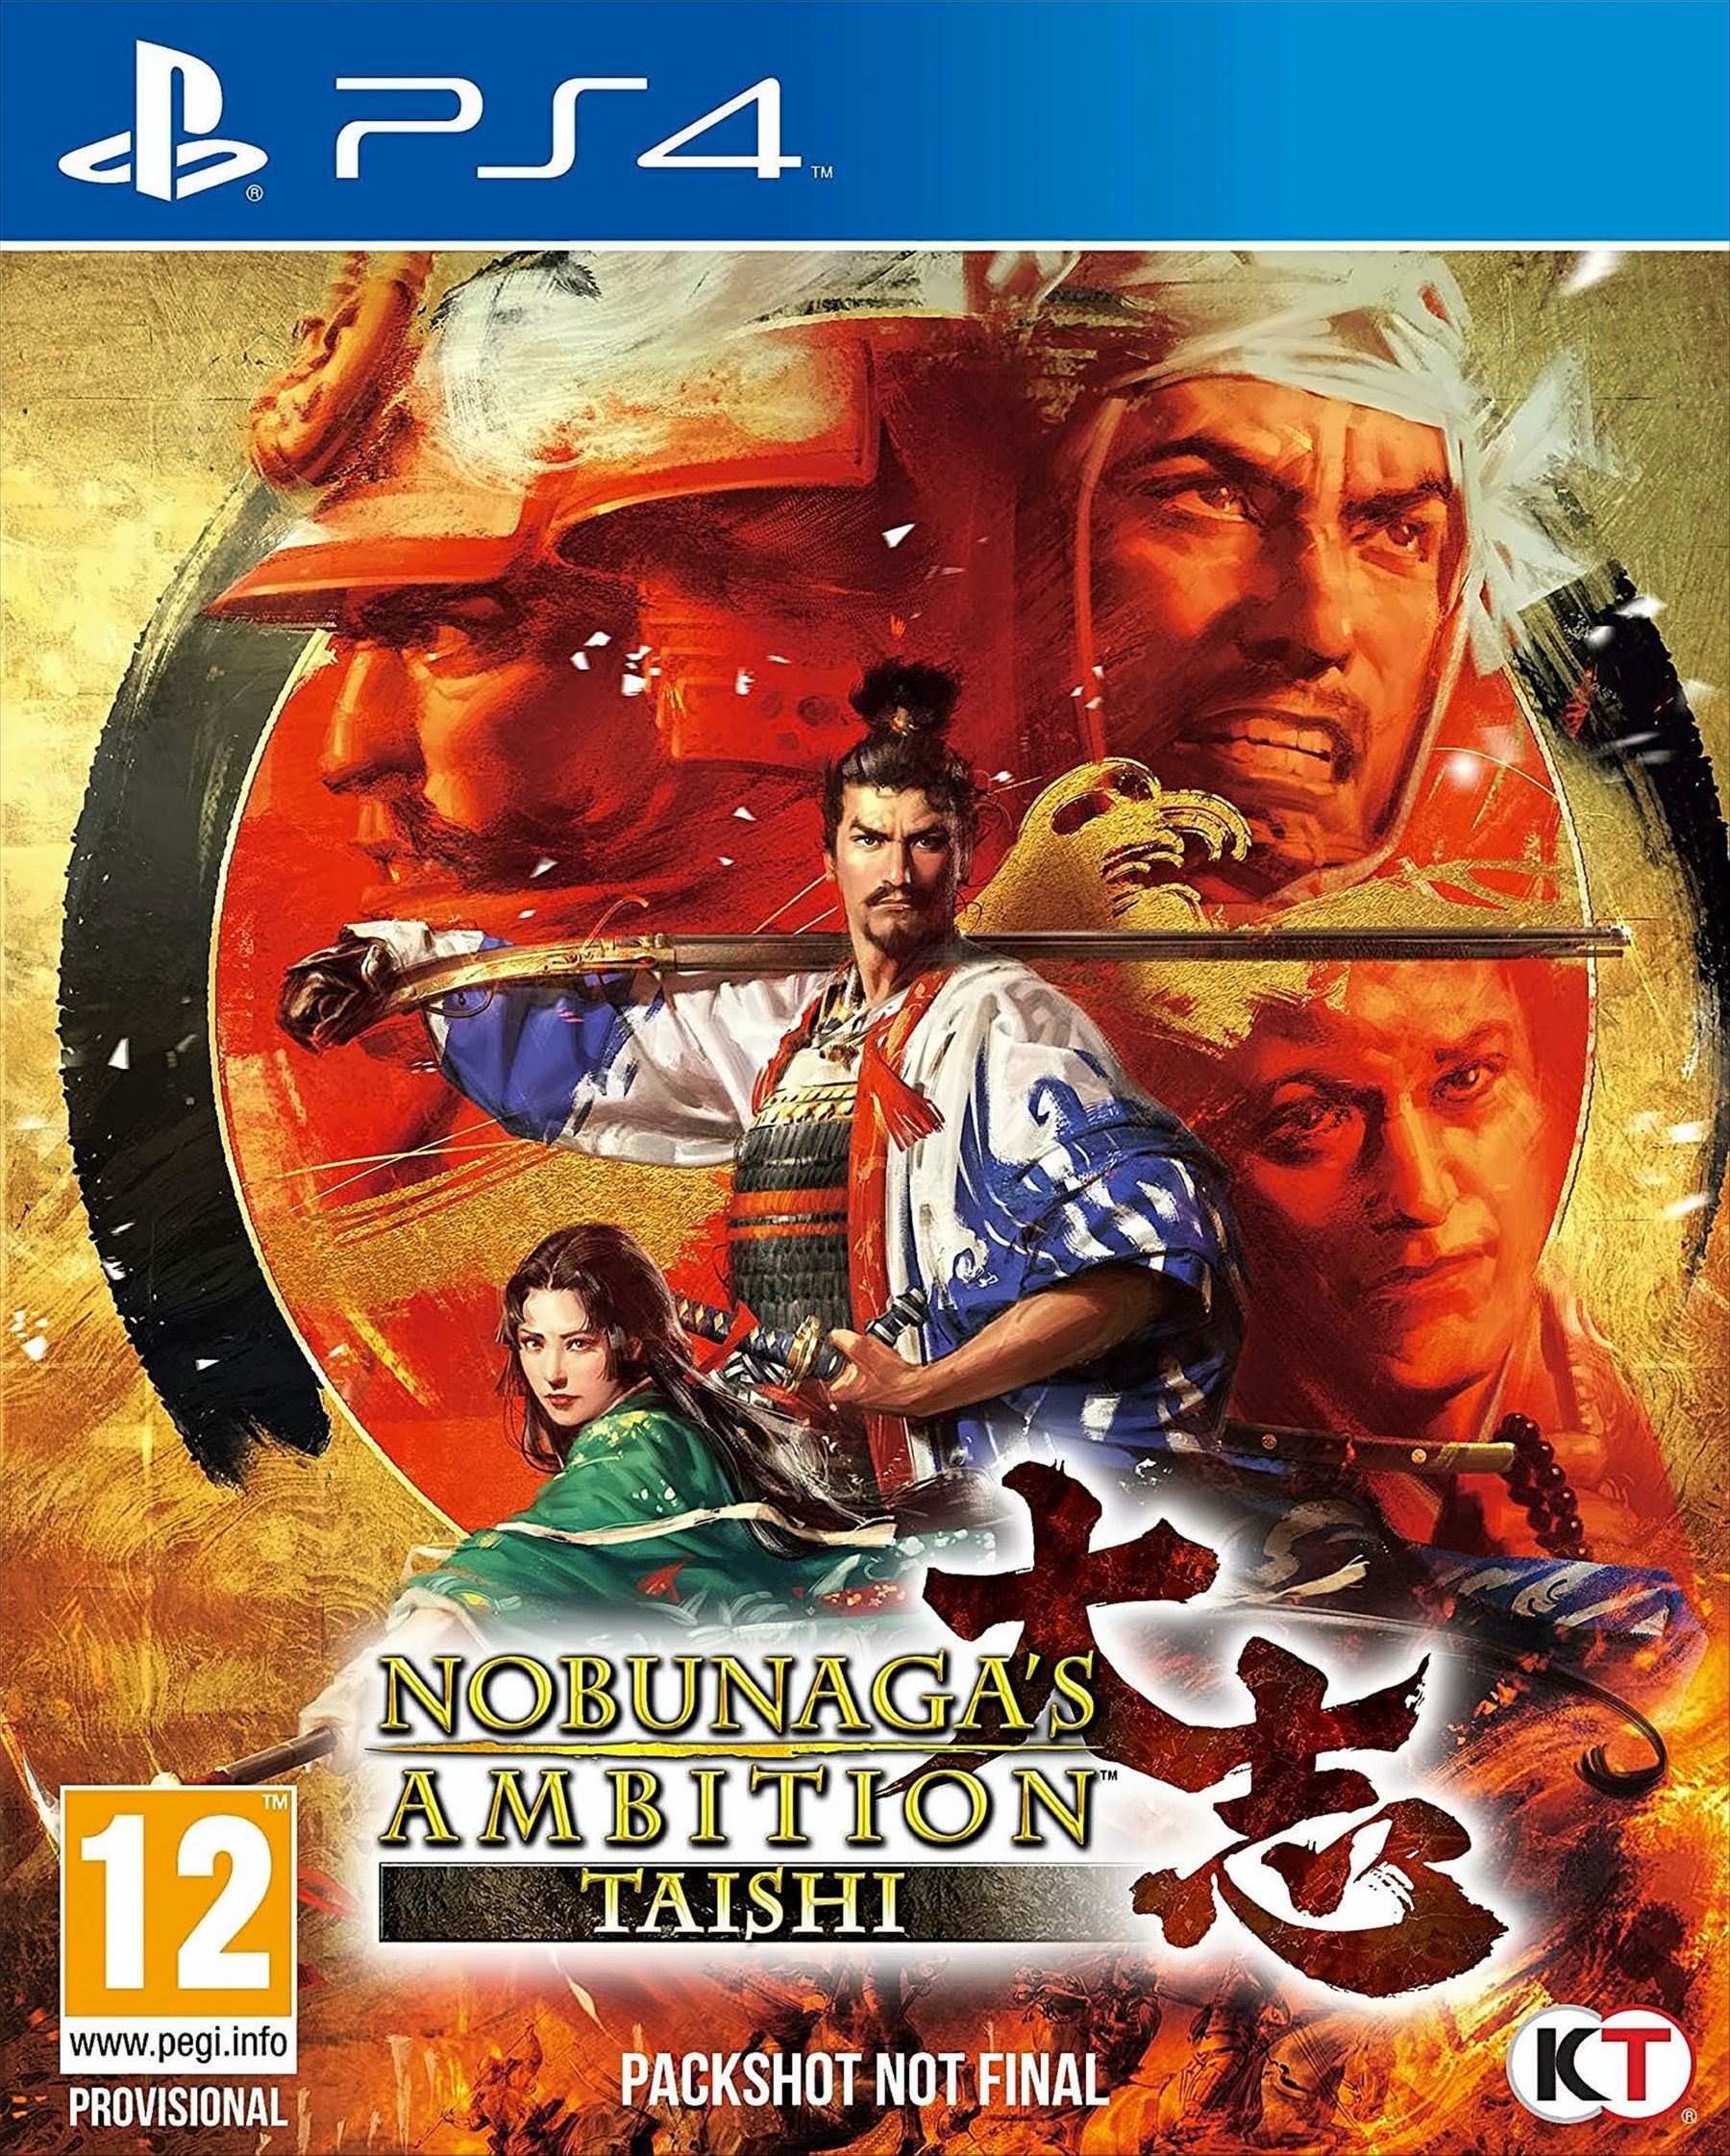 PS-4 - Ambition Taishi Nobunagas 4] [PlayStation